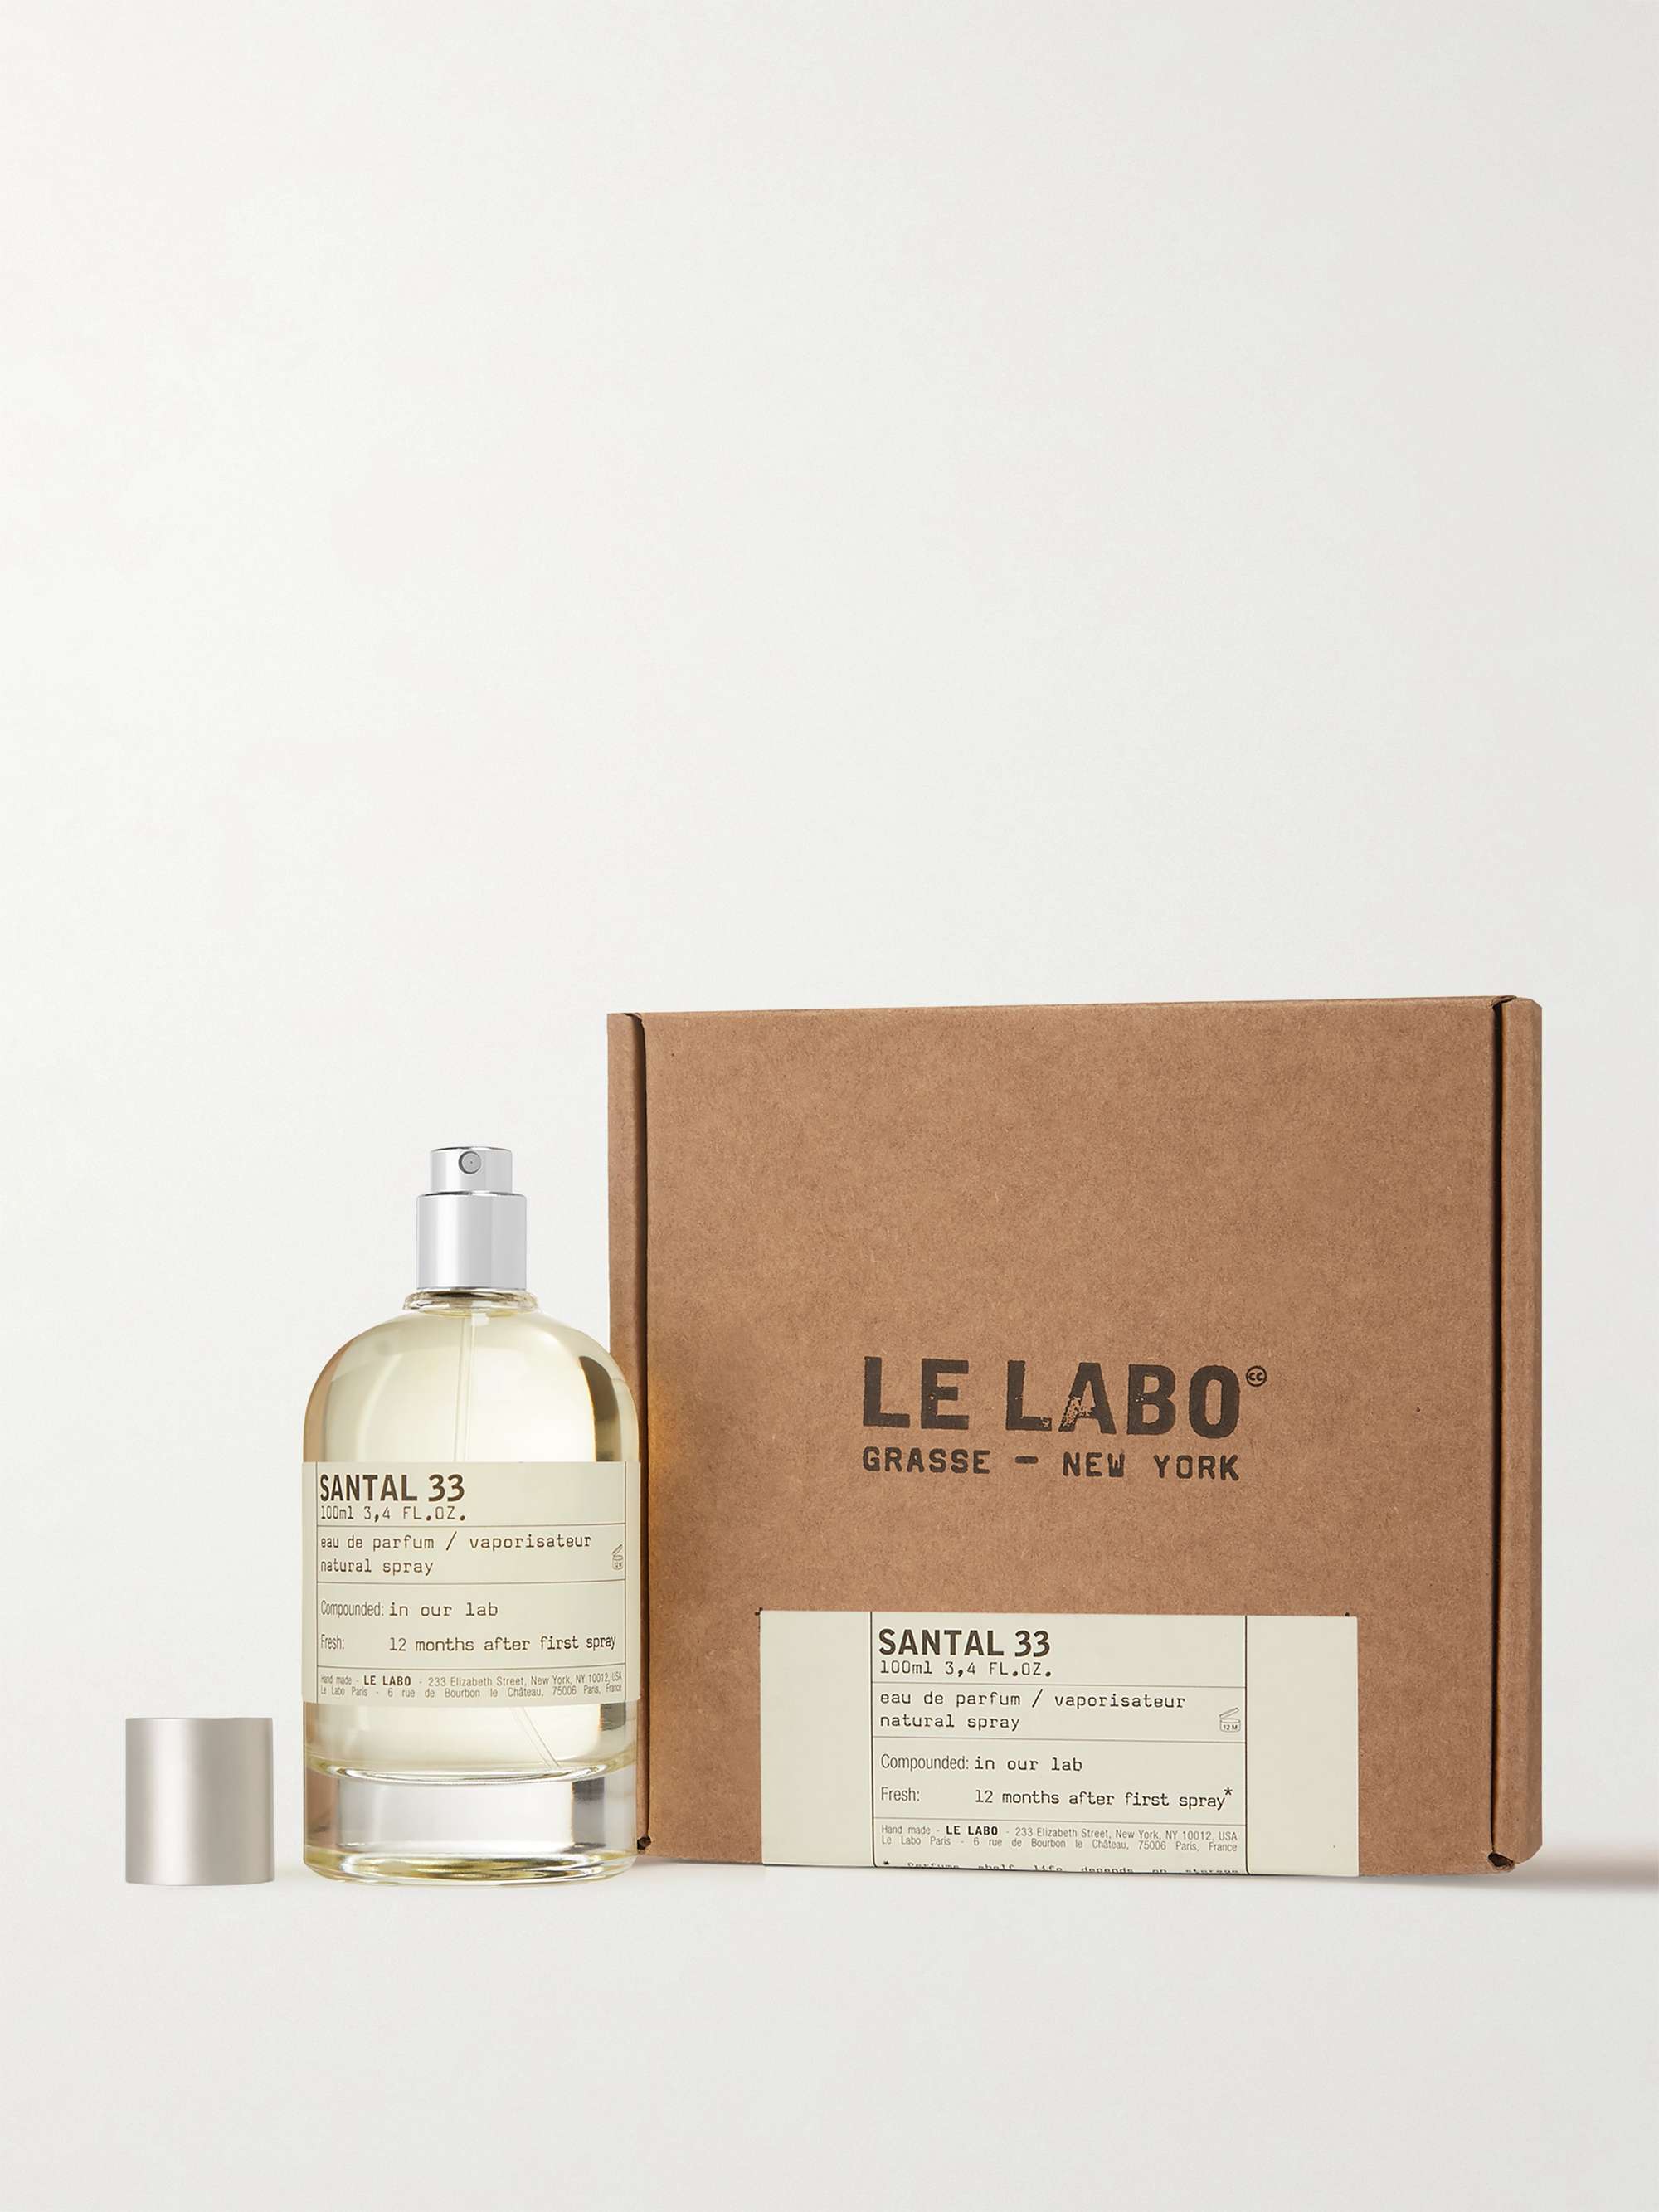 LE LABO Santal 33 Eau de Parfum, 50ml